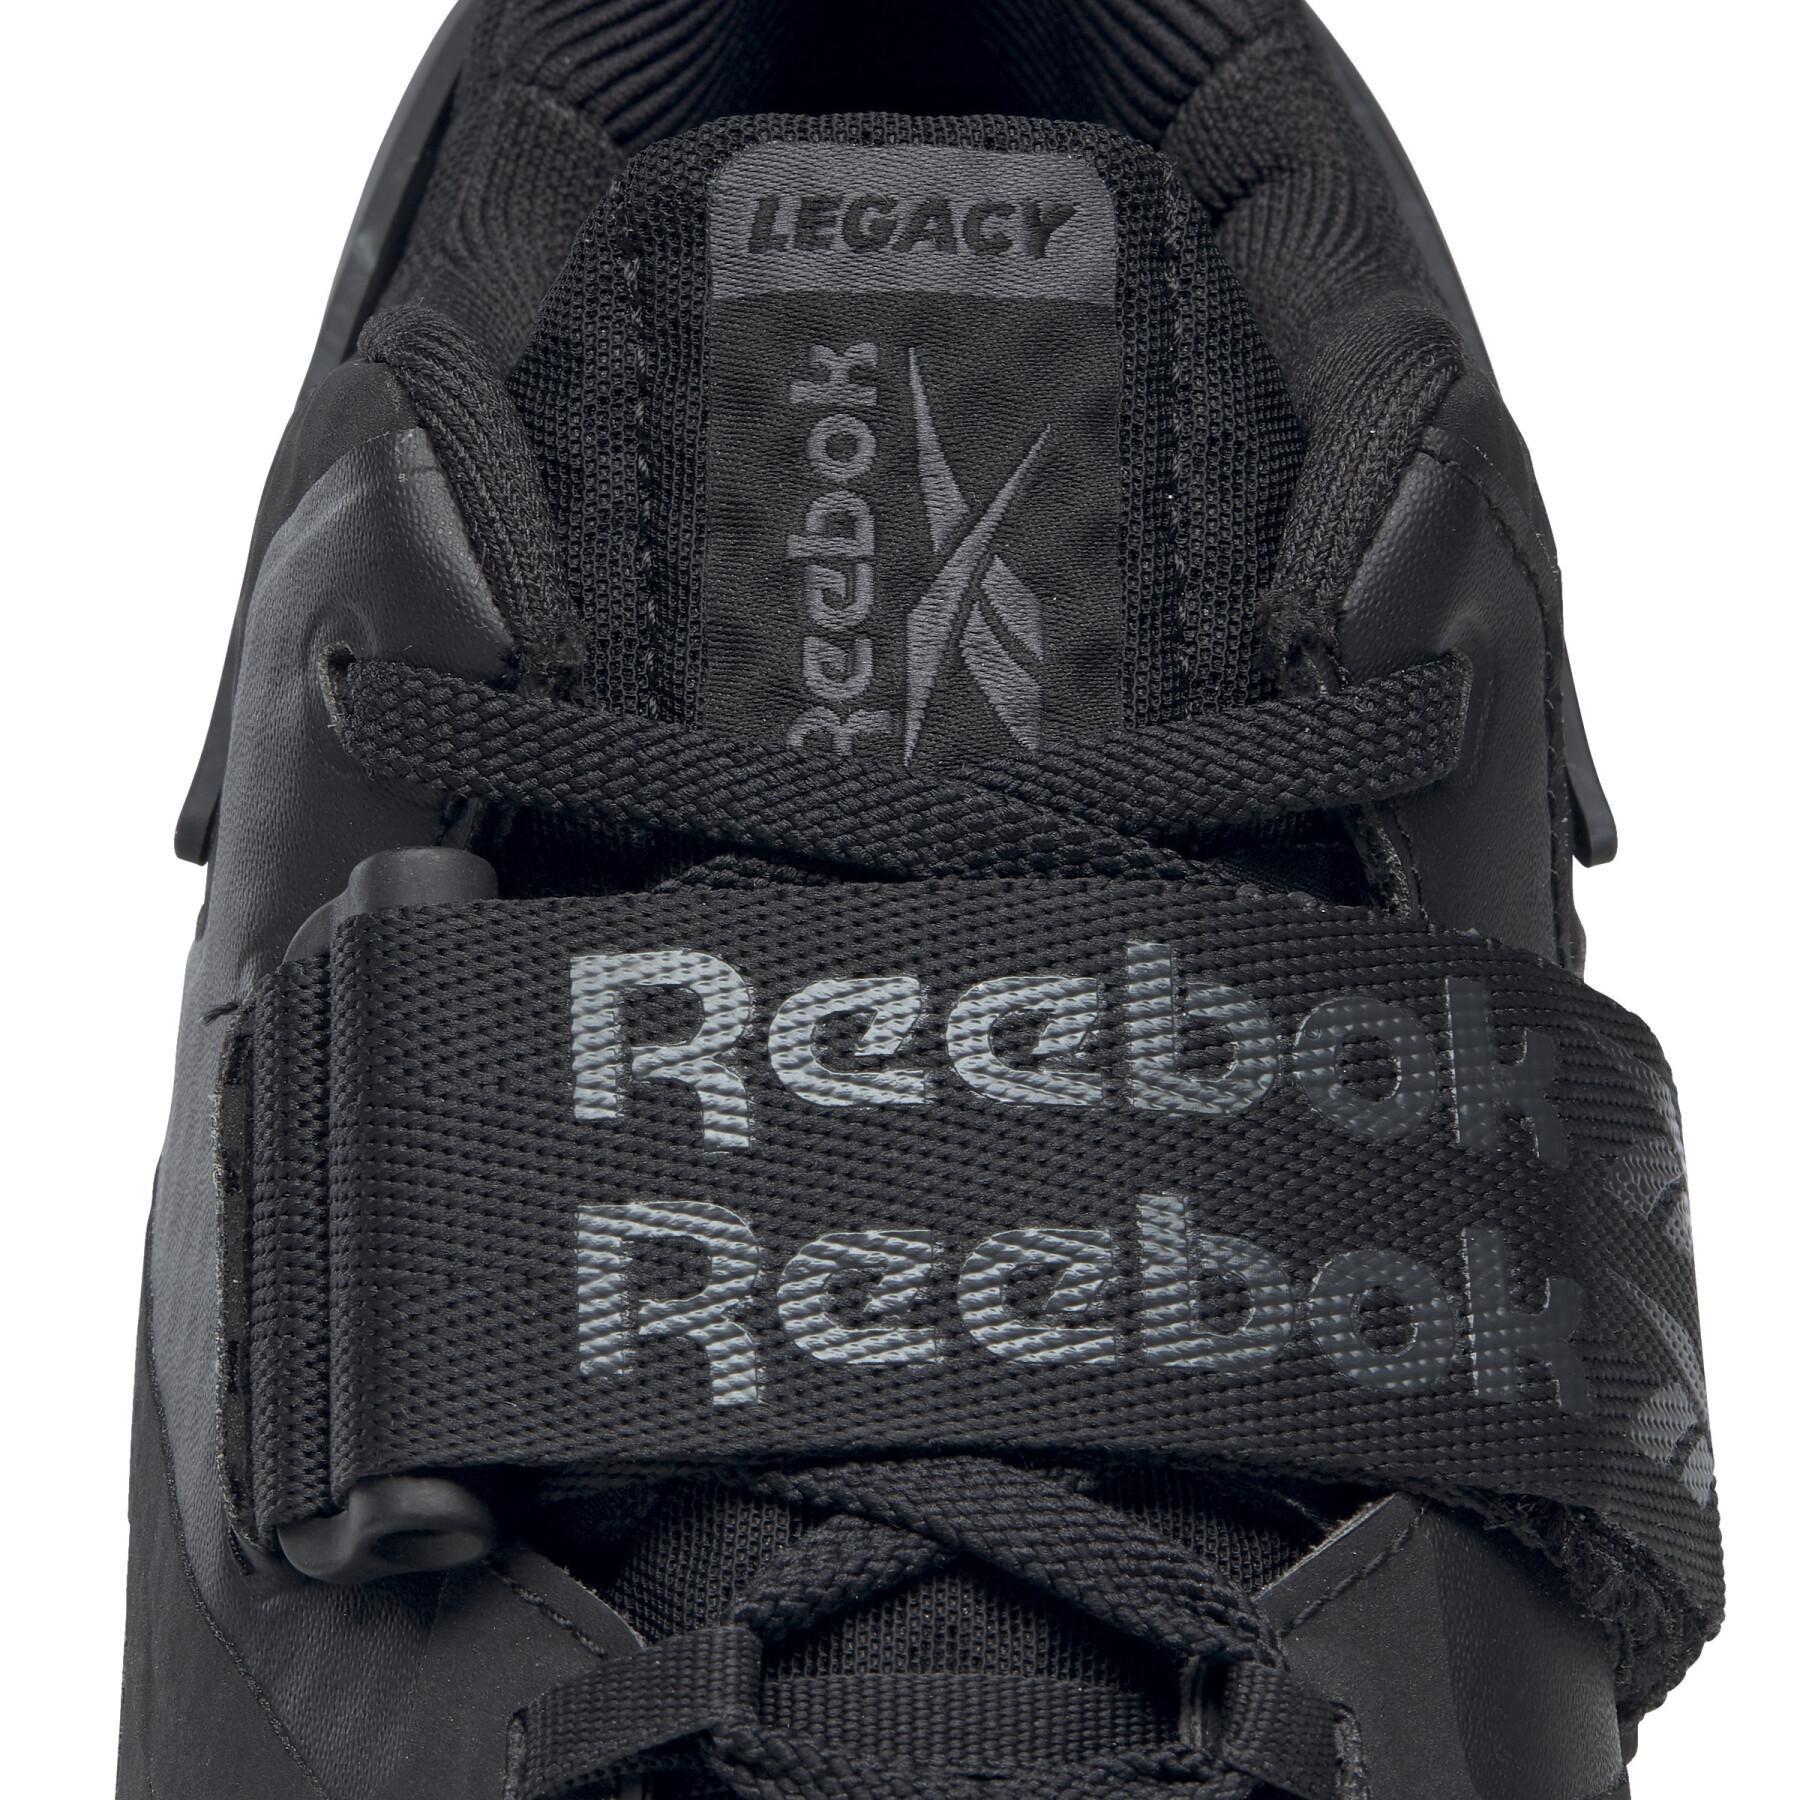 Zapatillas Reebok Legacy Lifter Ii